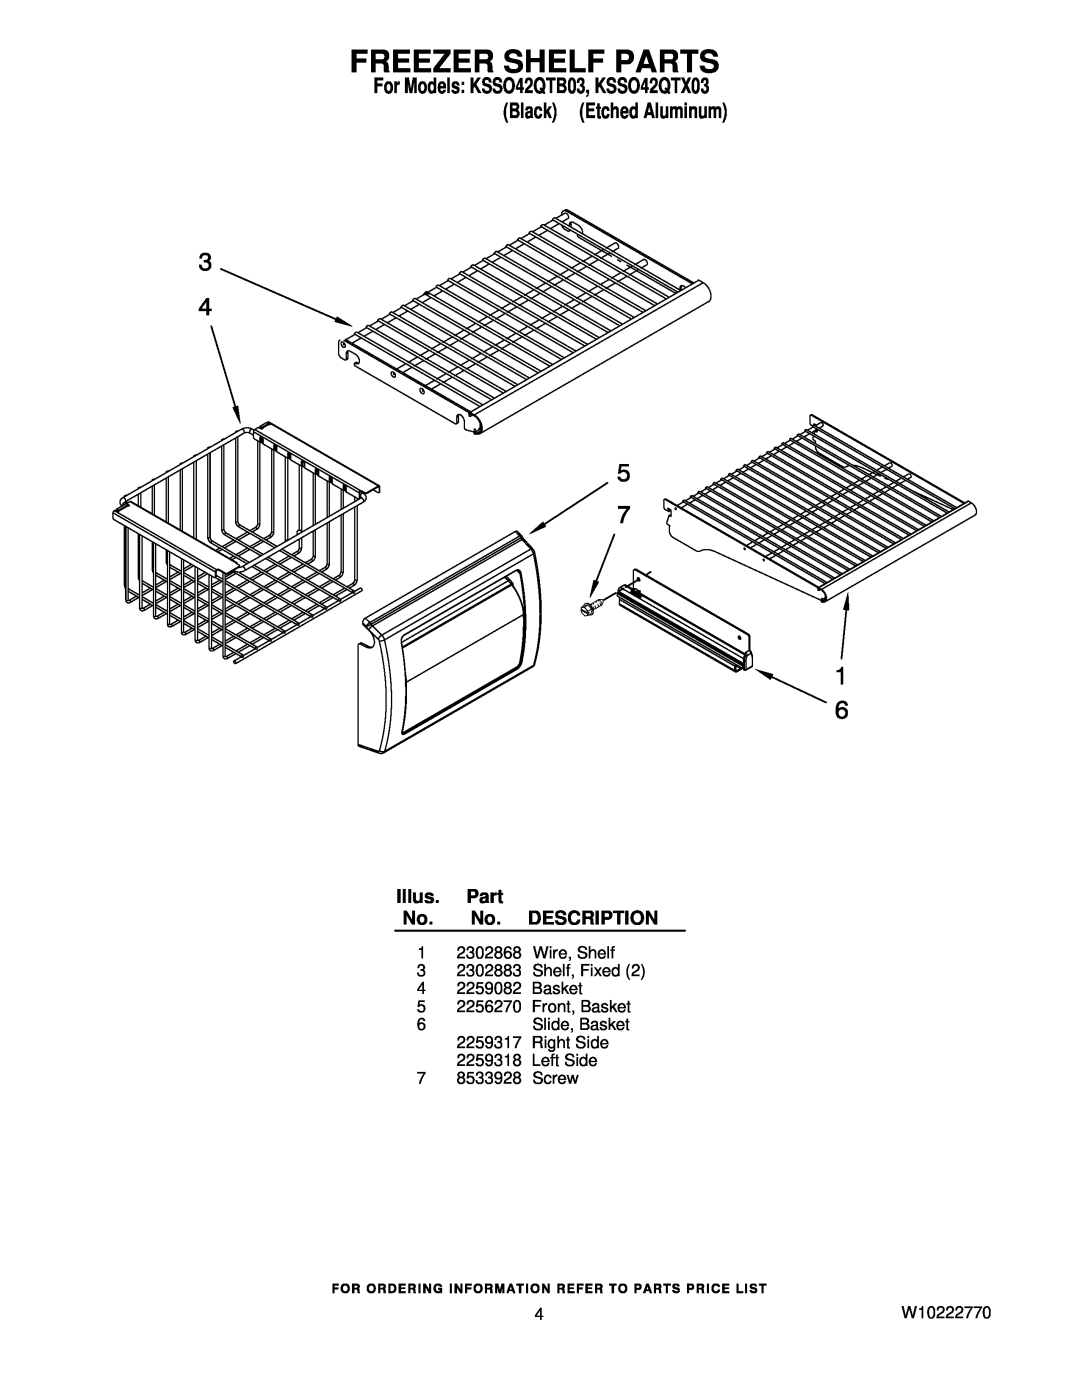 KitchenAid KSSO42QTX03 manual Freezer Shelf Parts, Illus. Part No. No. DESCRIPTION, Left Side 7 8533928 Screw, W10222770 